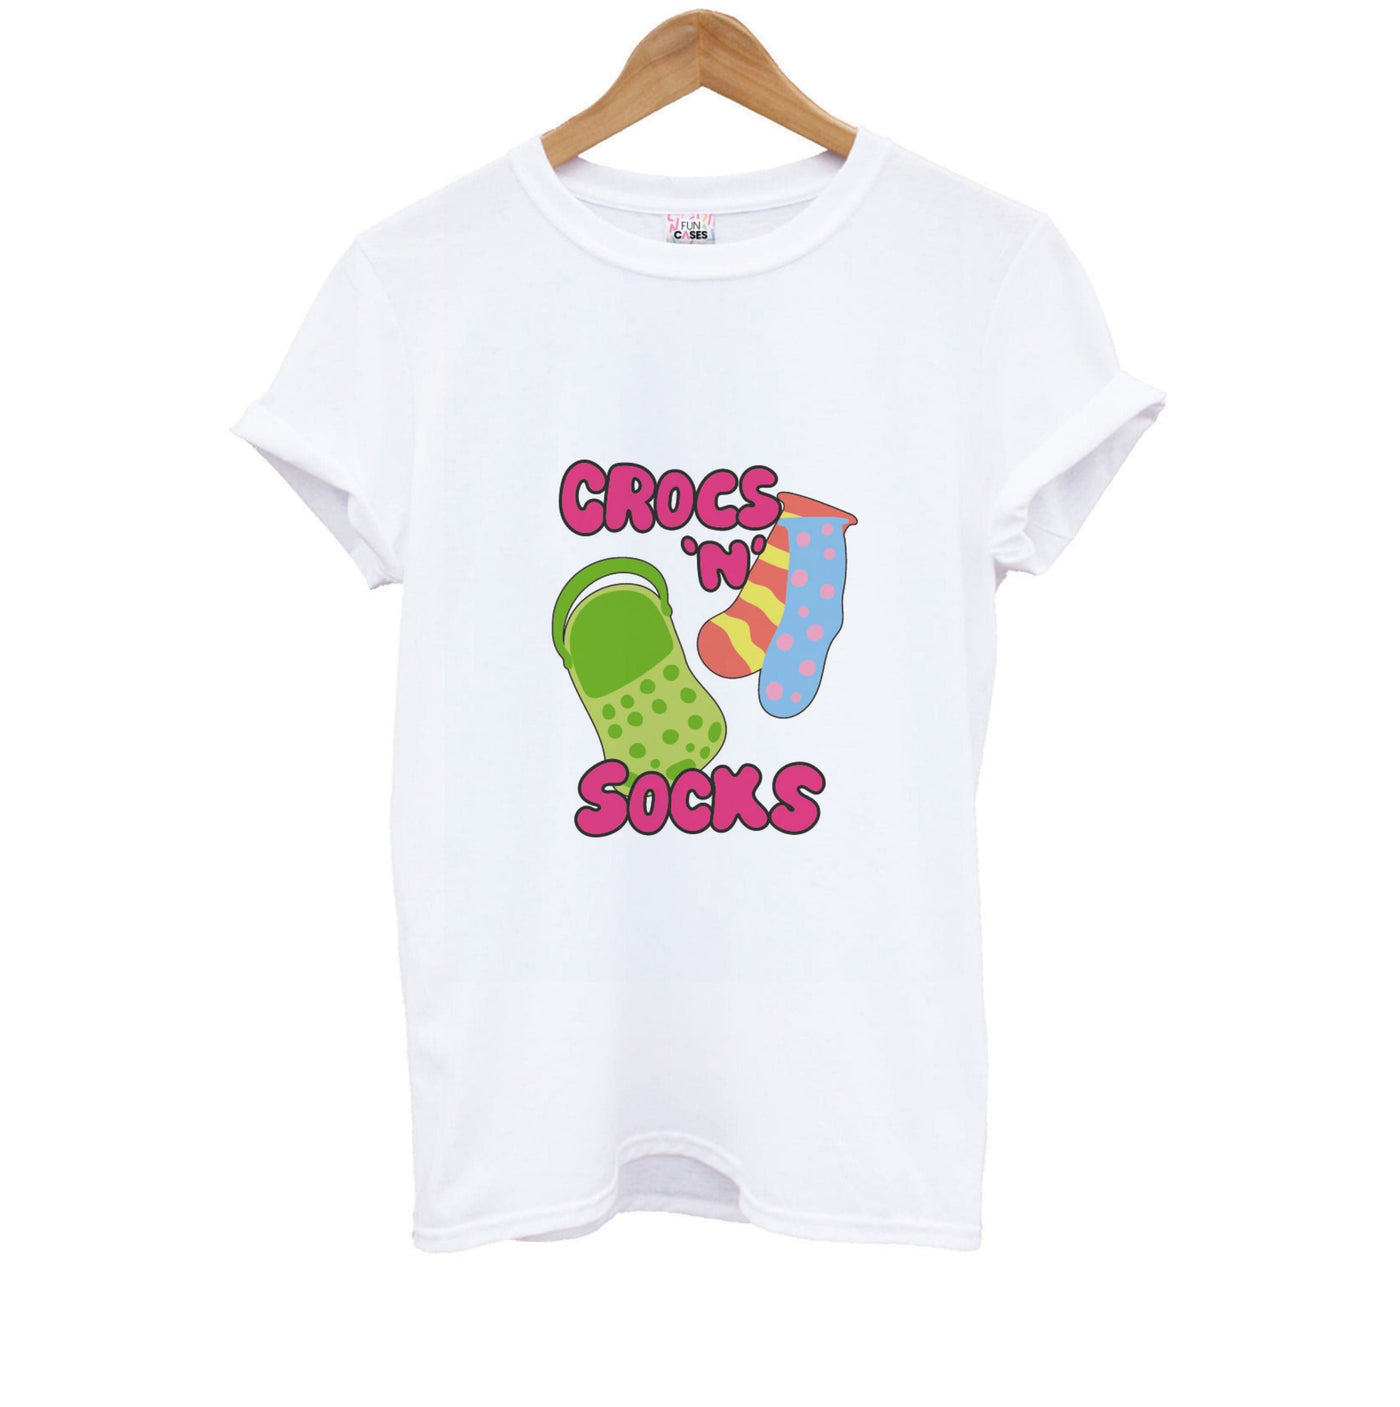 Crocs And Socks - Crocs Kids T-Shirt